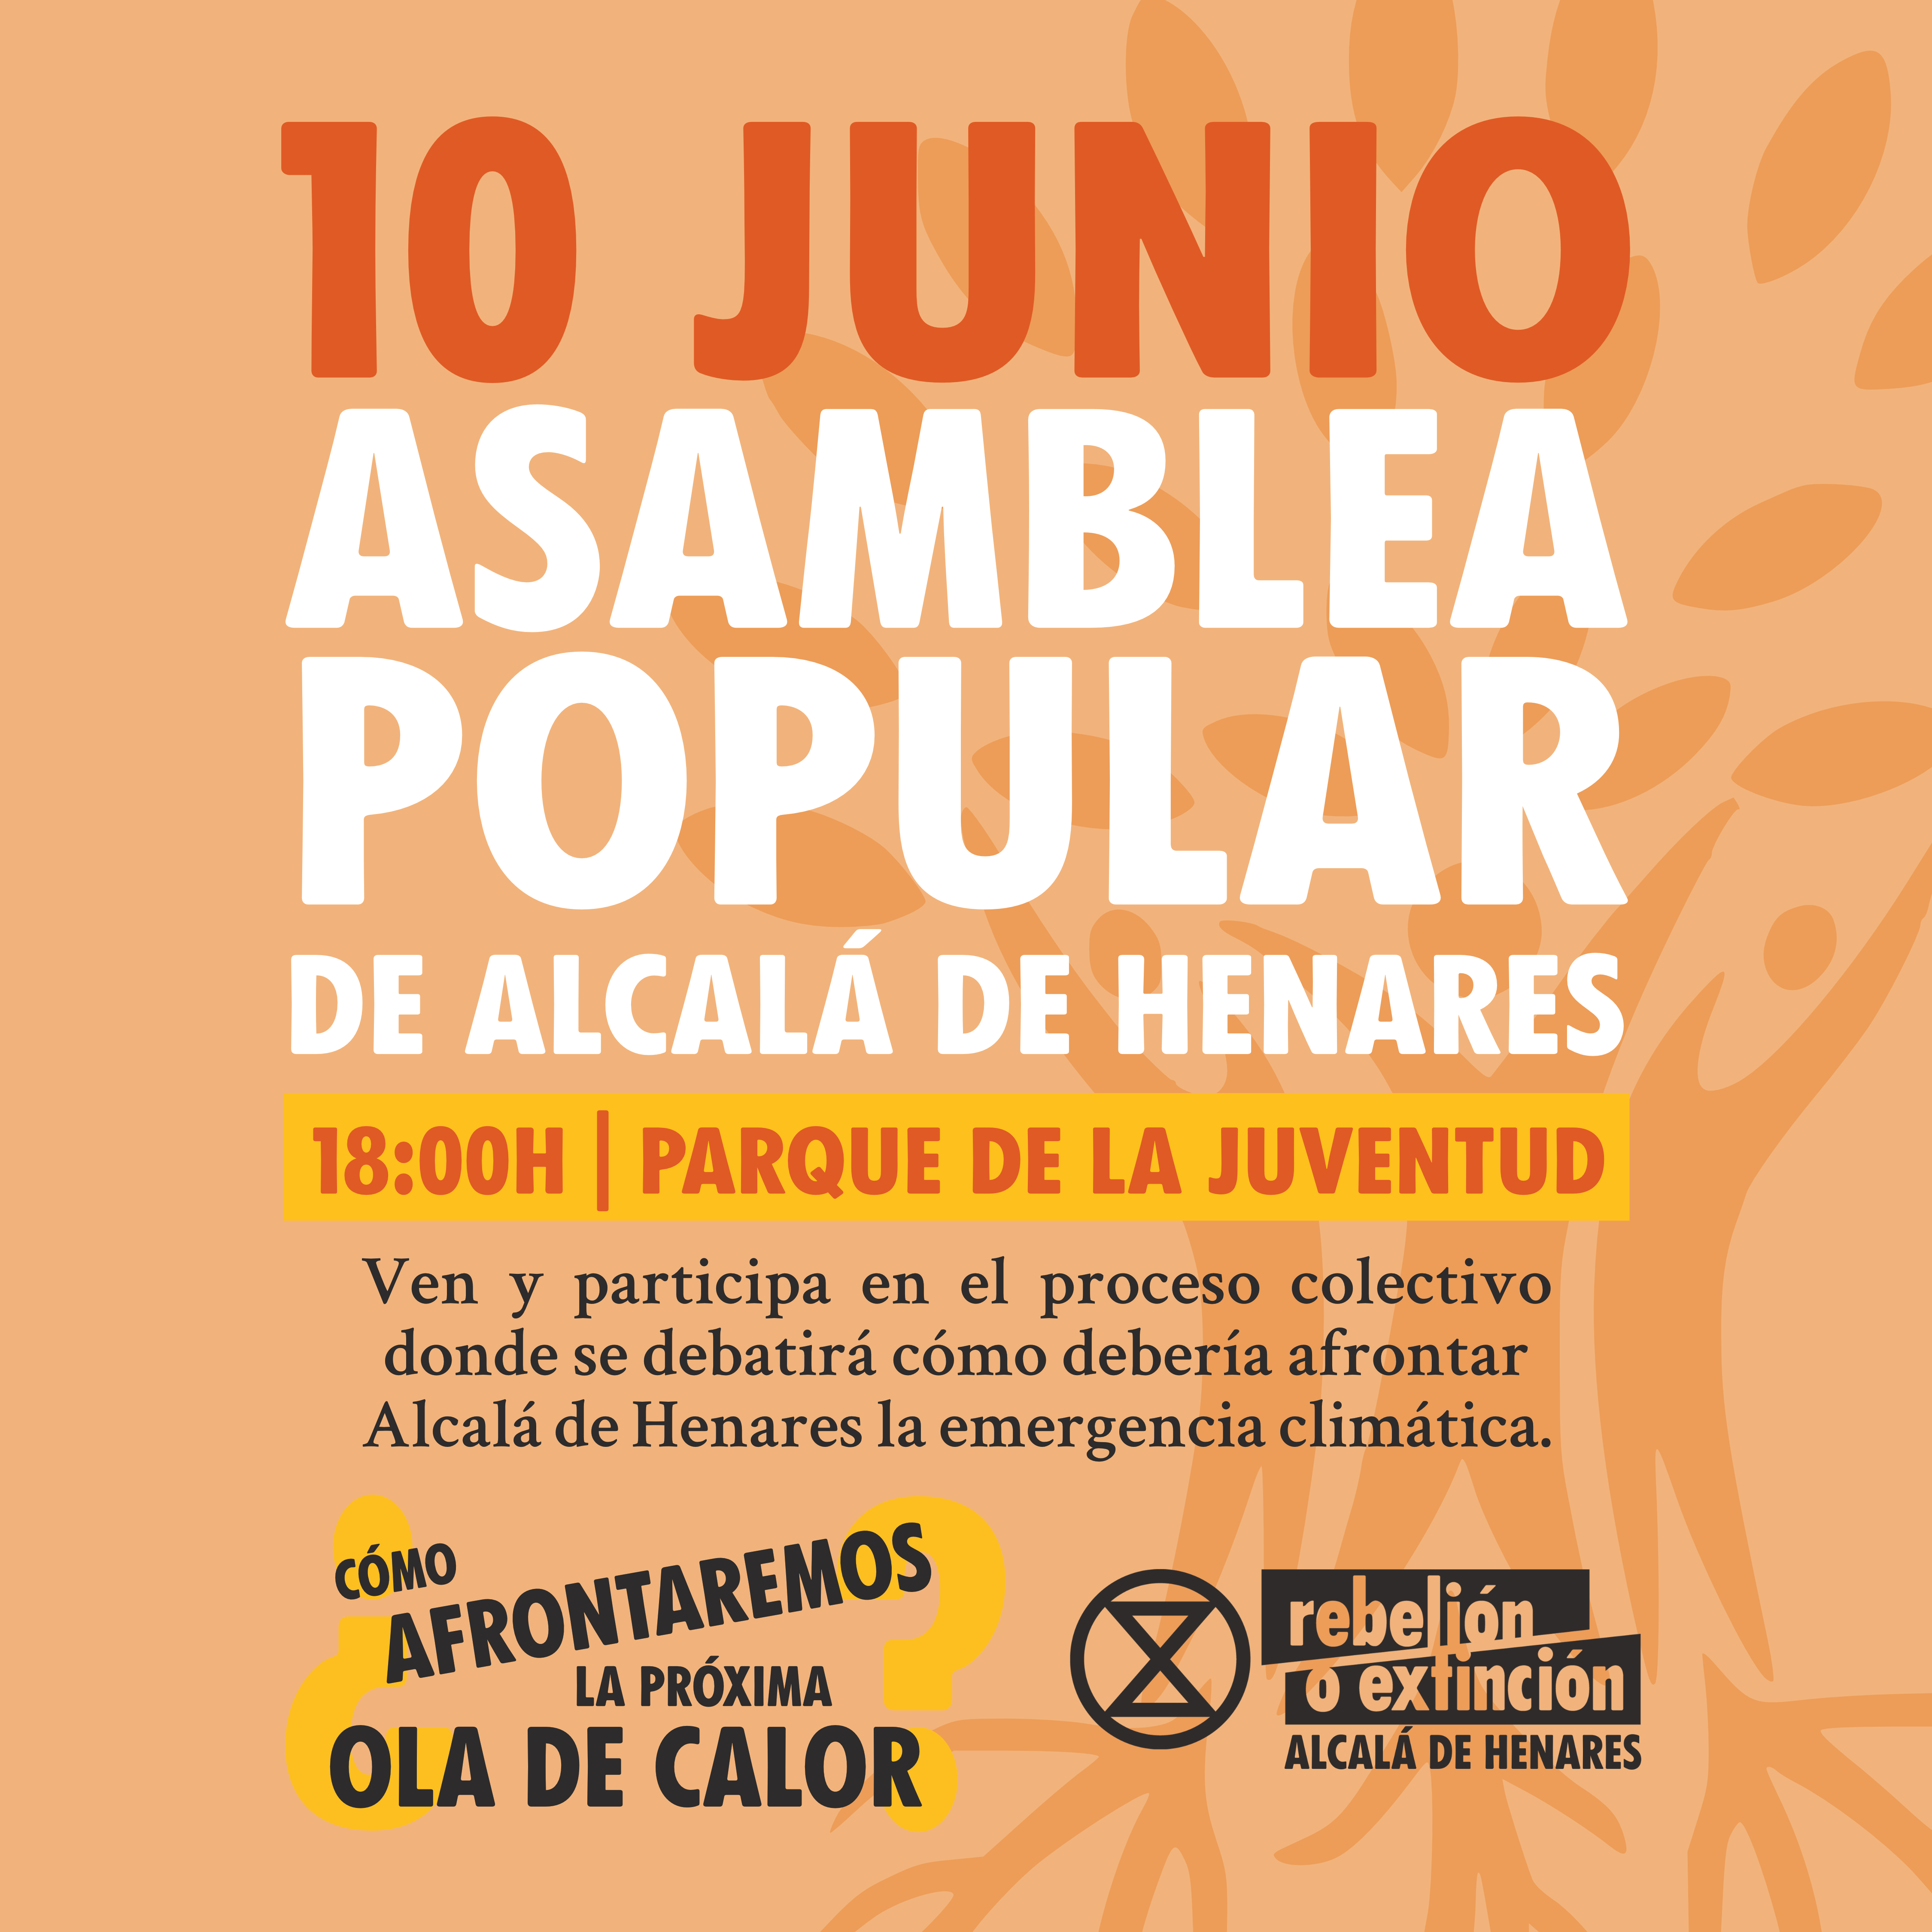 Cartel de la asamblea popular de Alcalá de Henares. El 10 de junio a las 18:00 en el parque de la Juventud